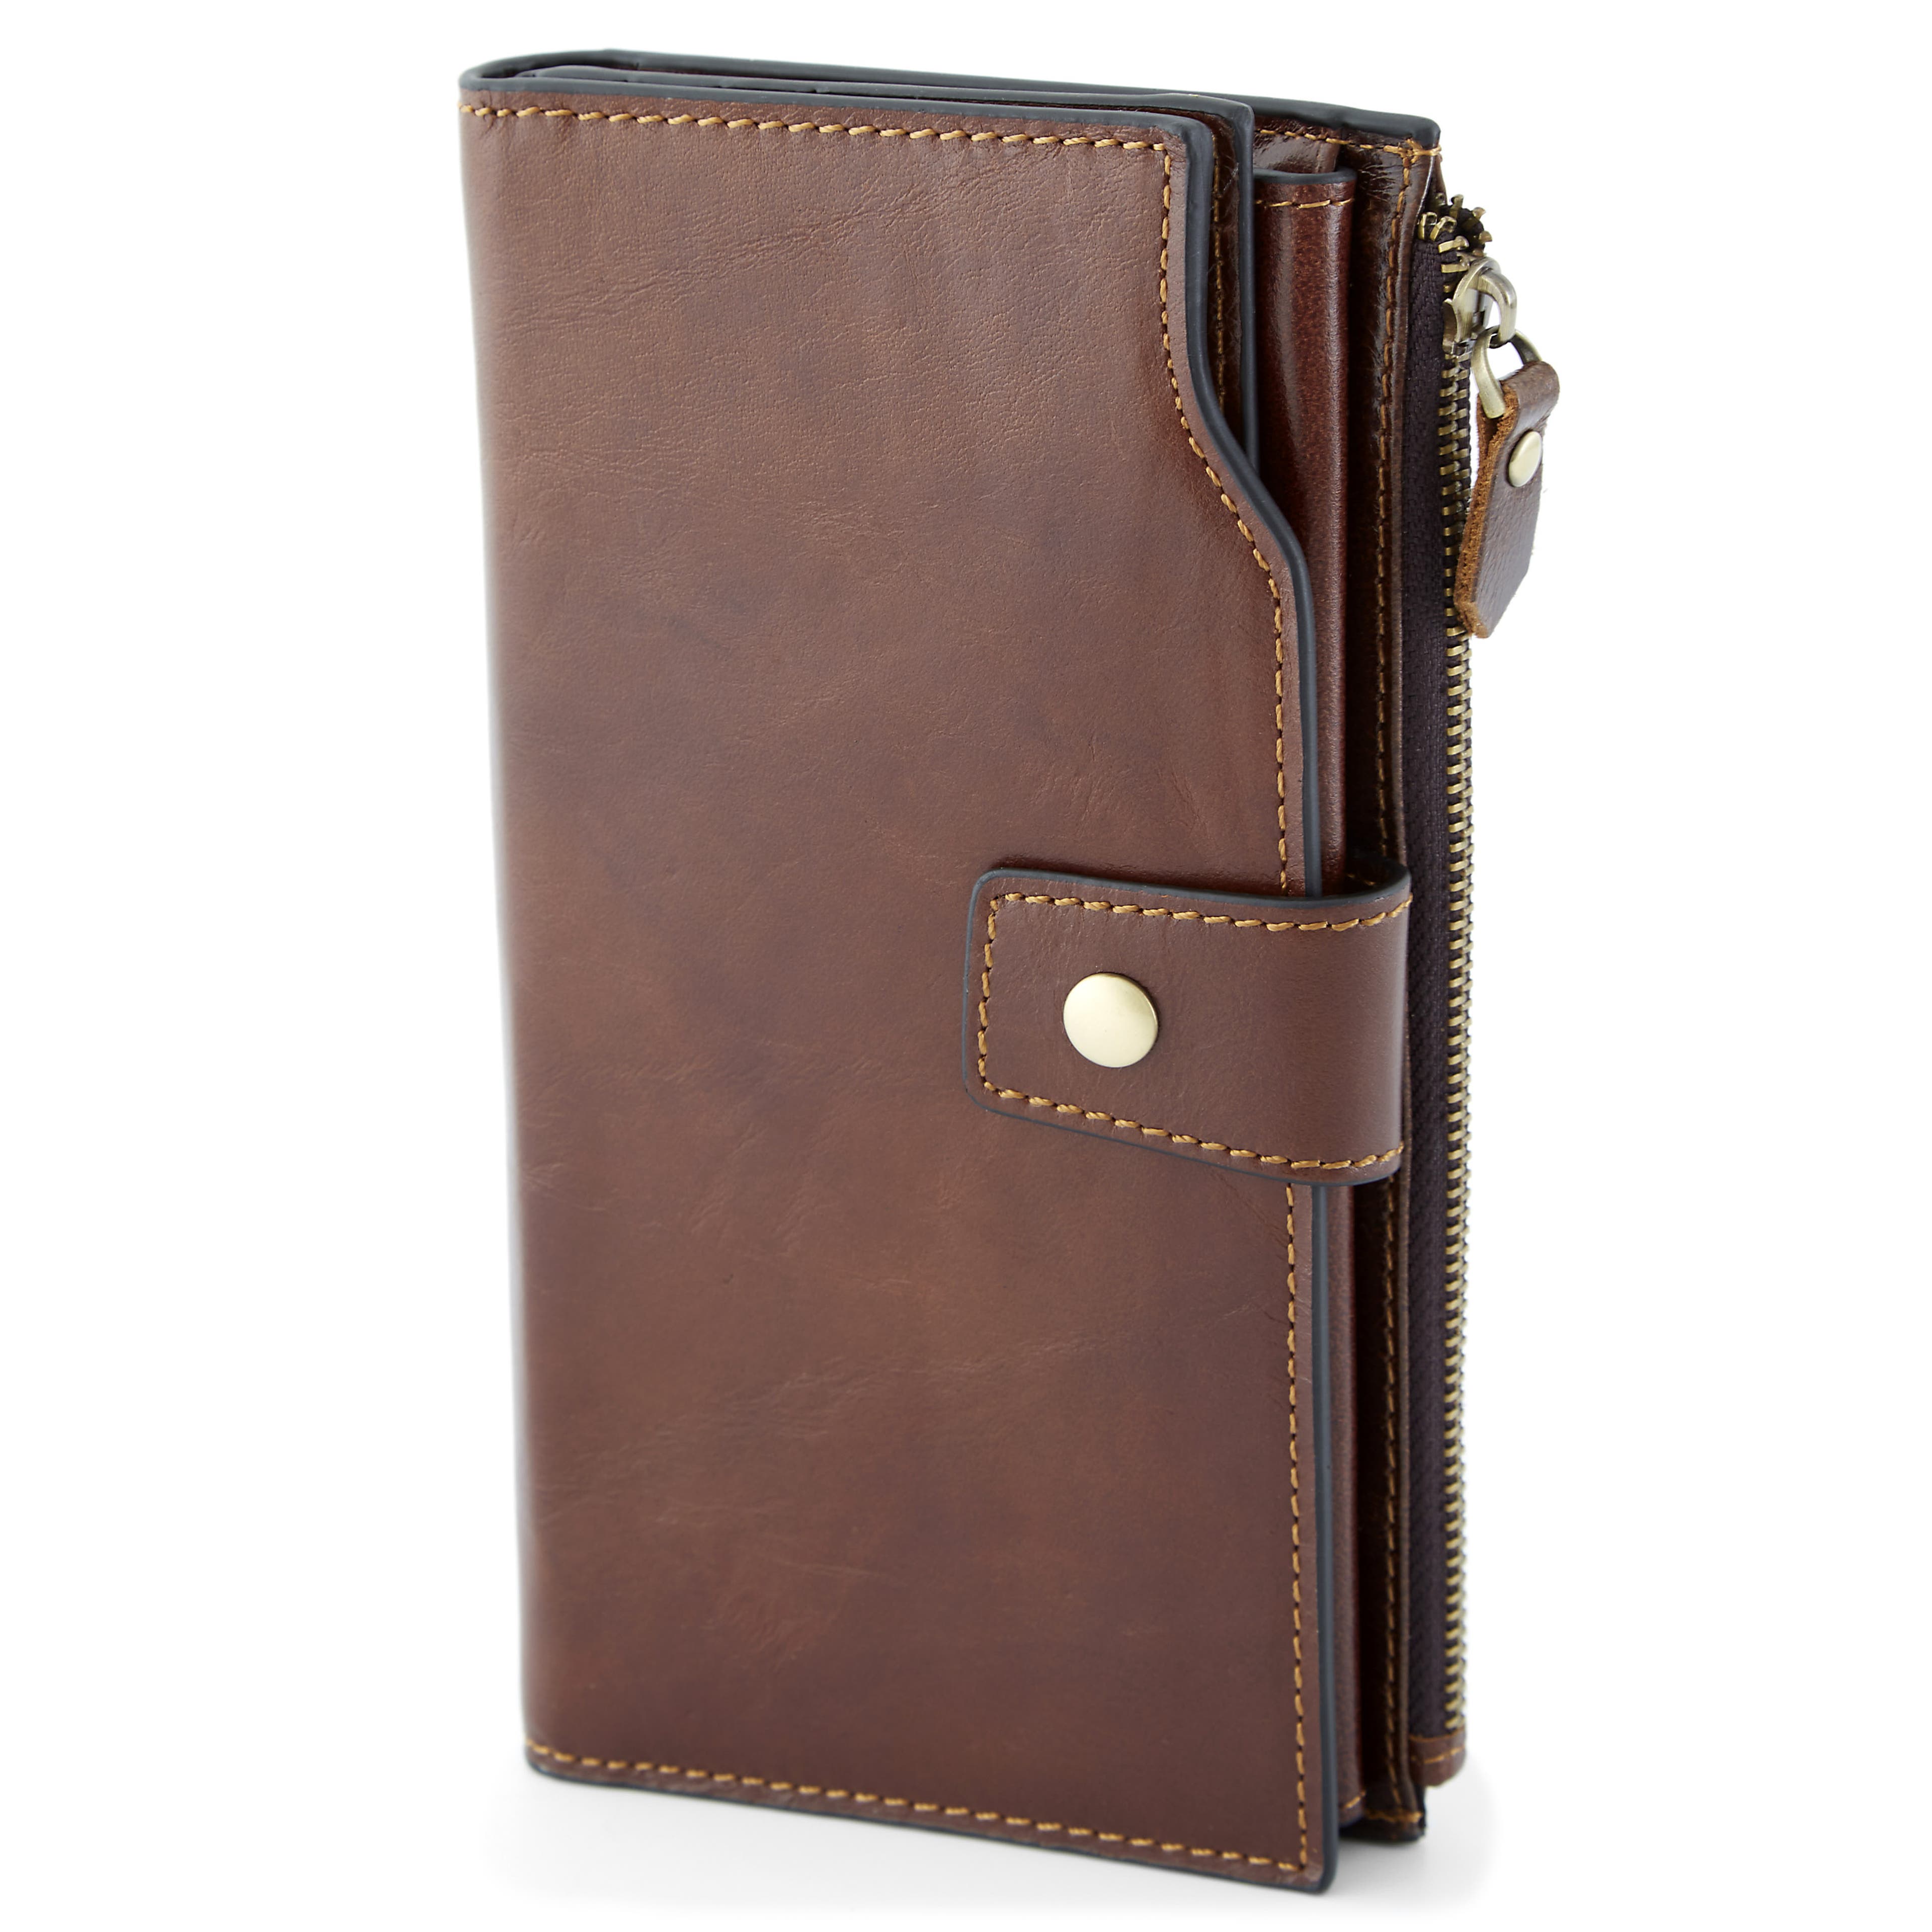 Vintage Brown RFID Leather Wallet